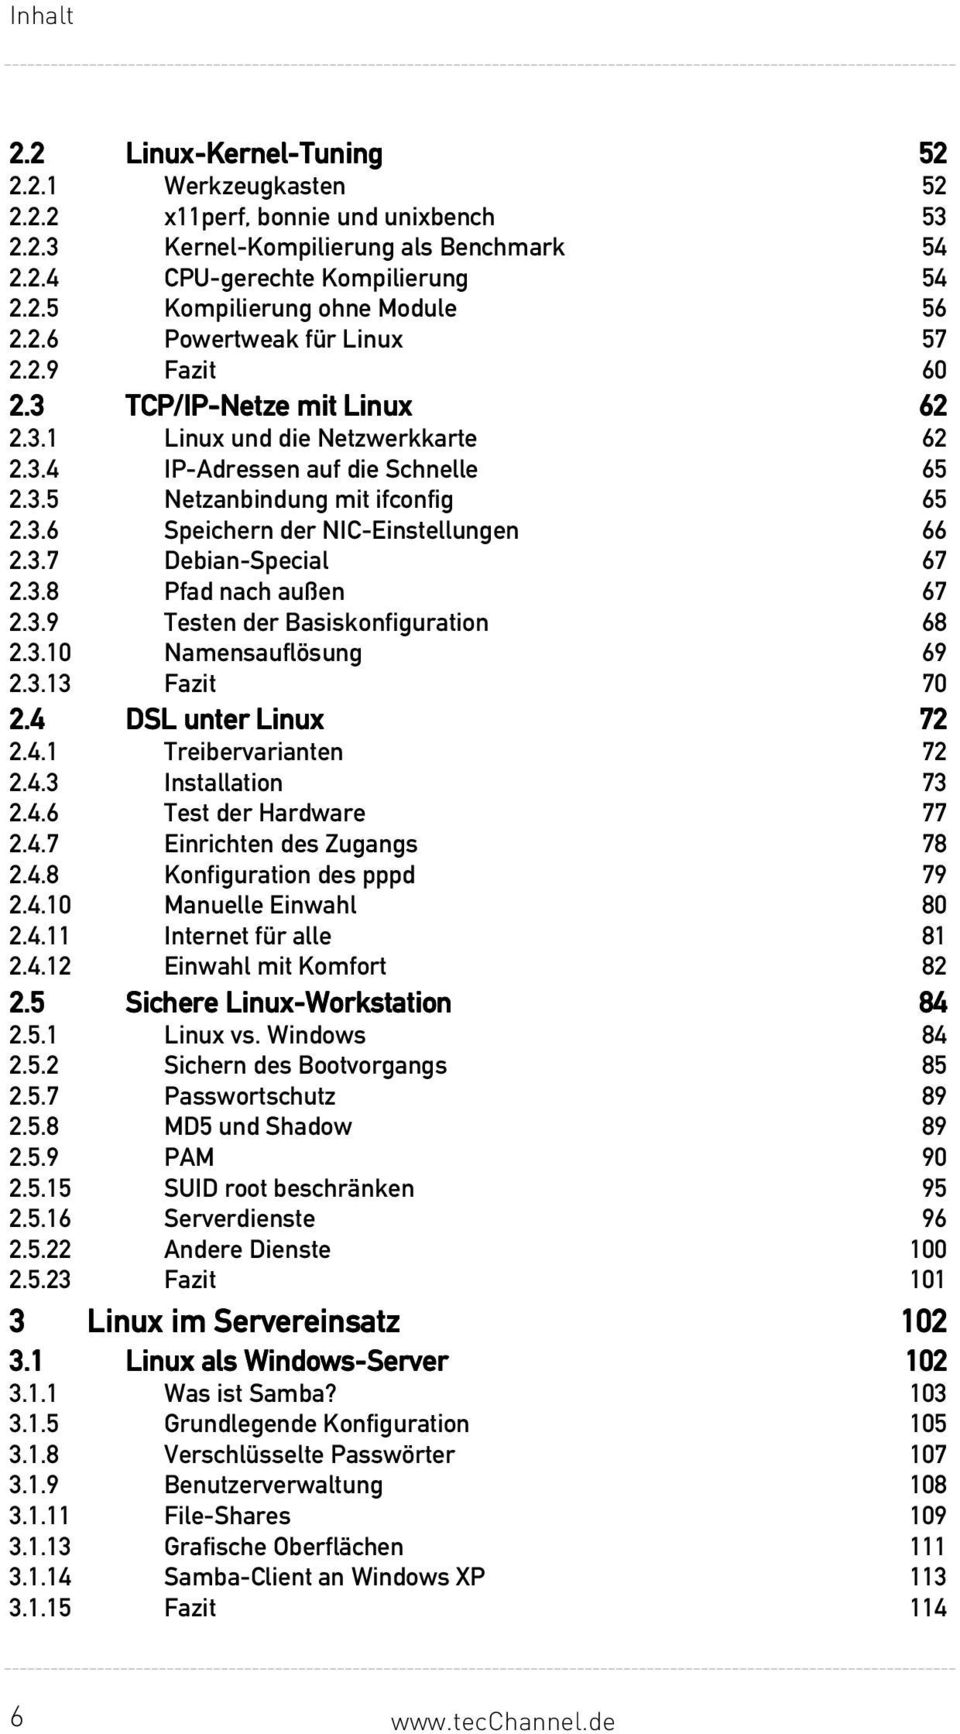 3.7 Debian-Special 67 2.3.8 Pfad nach außen 67 2.3.9 Testen der Basiskonfiguration 68 2.3.10 Namensauflösung 69 2.3.13 Fazit 70 2.4 DSL unter Linux 72 2.4.1 Treibervarianten 72 2.4.3 Installation 73 2.